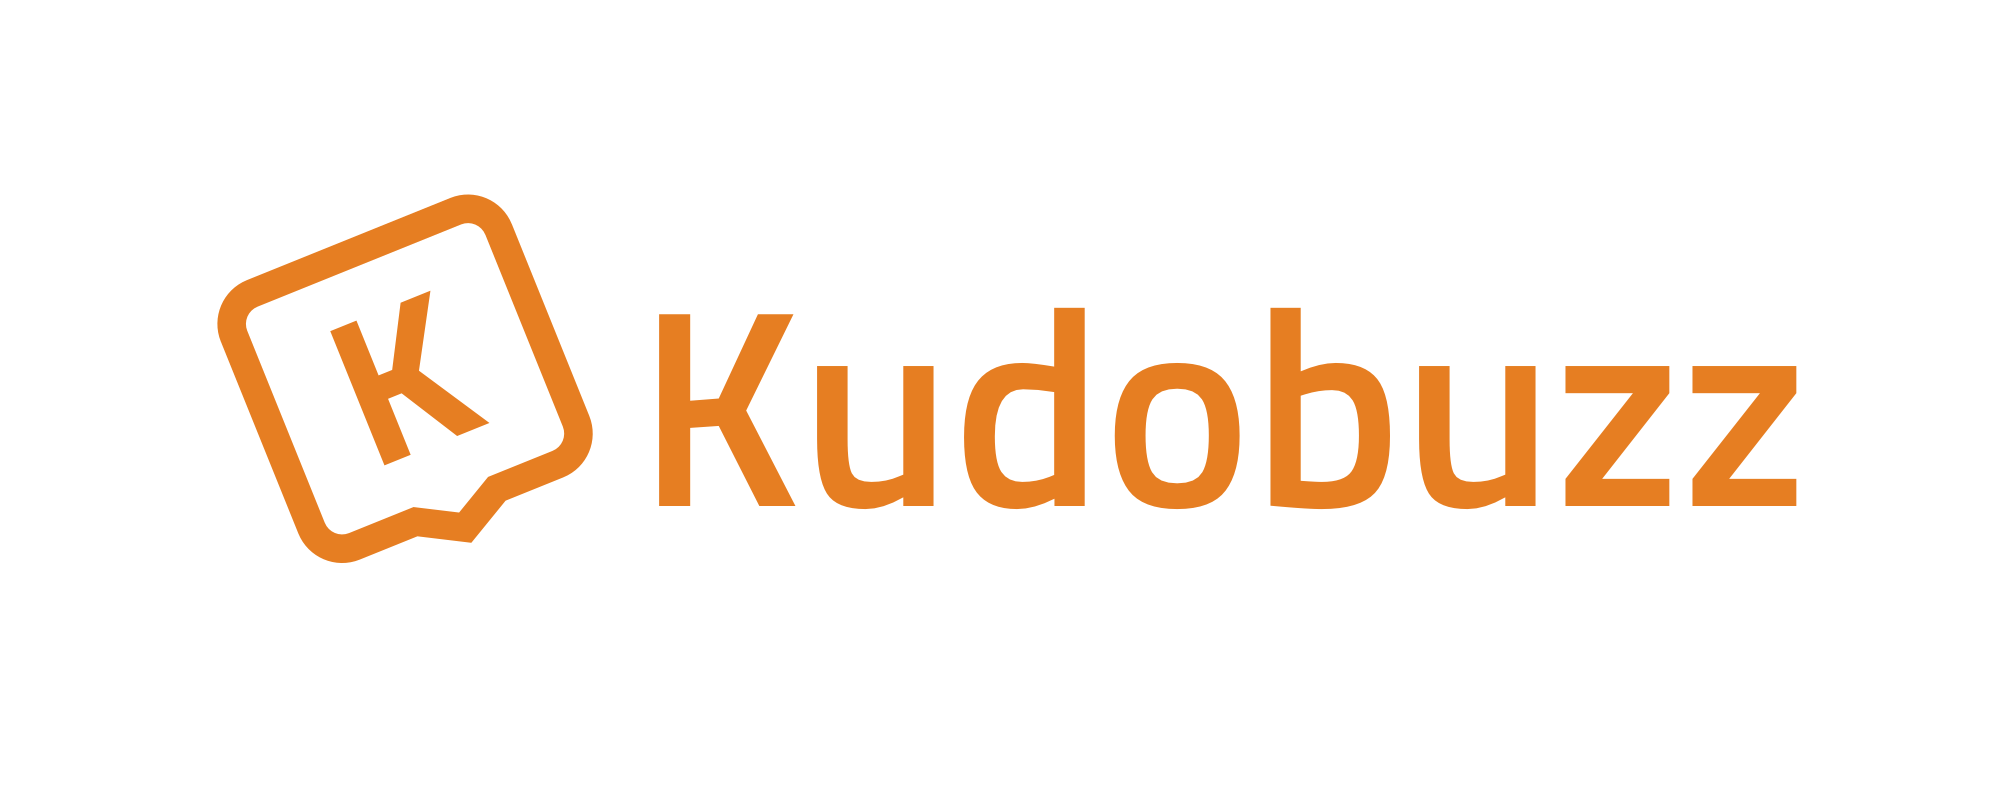 Popular Orange Logo - Kudobuzz-logo-orange-text - MEST Africa